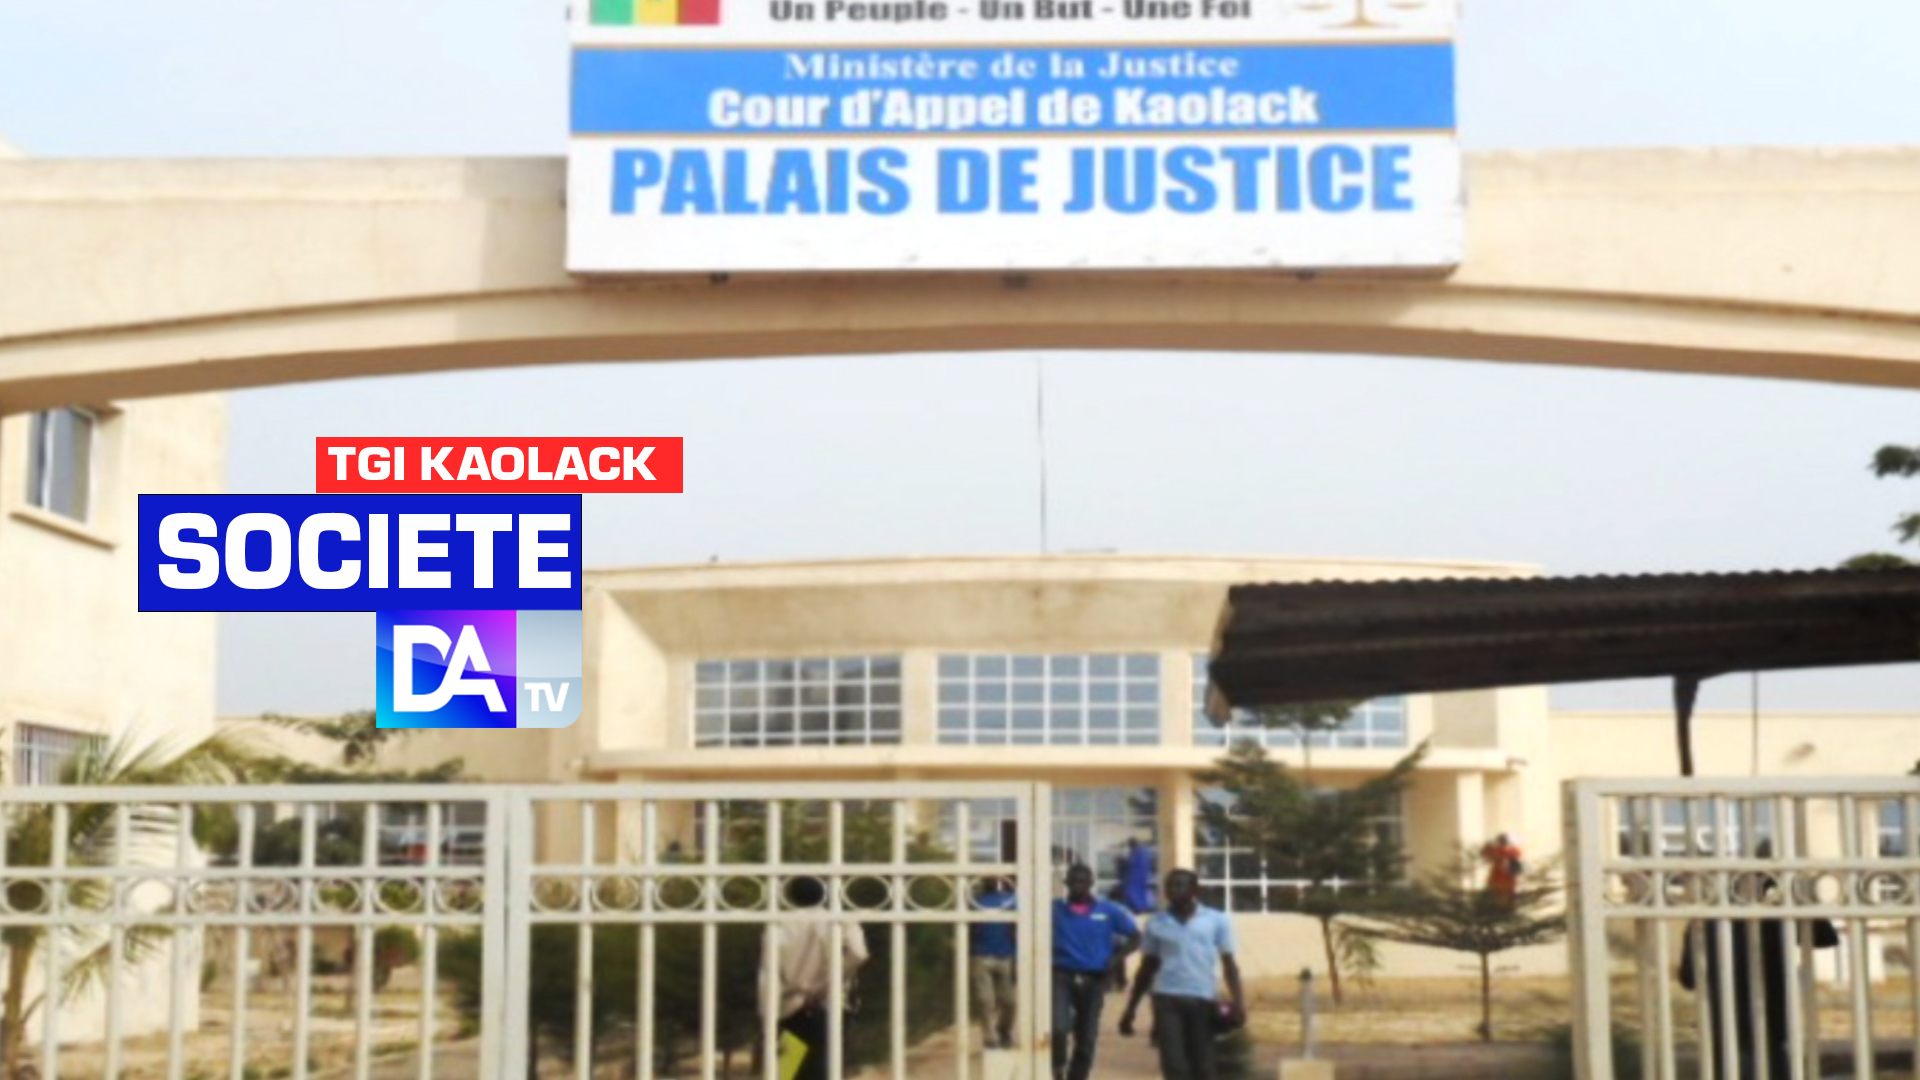 Meurtre du jeune Abdourahim Niass à Kaolack : 5 ressortissants maliens interpellés... Le parquet a ordonné l'ouverture d'une enquête pour déterminer les circonstances du drame.